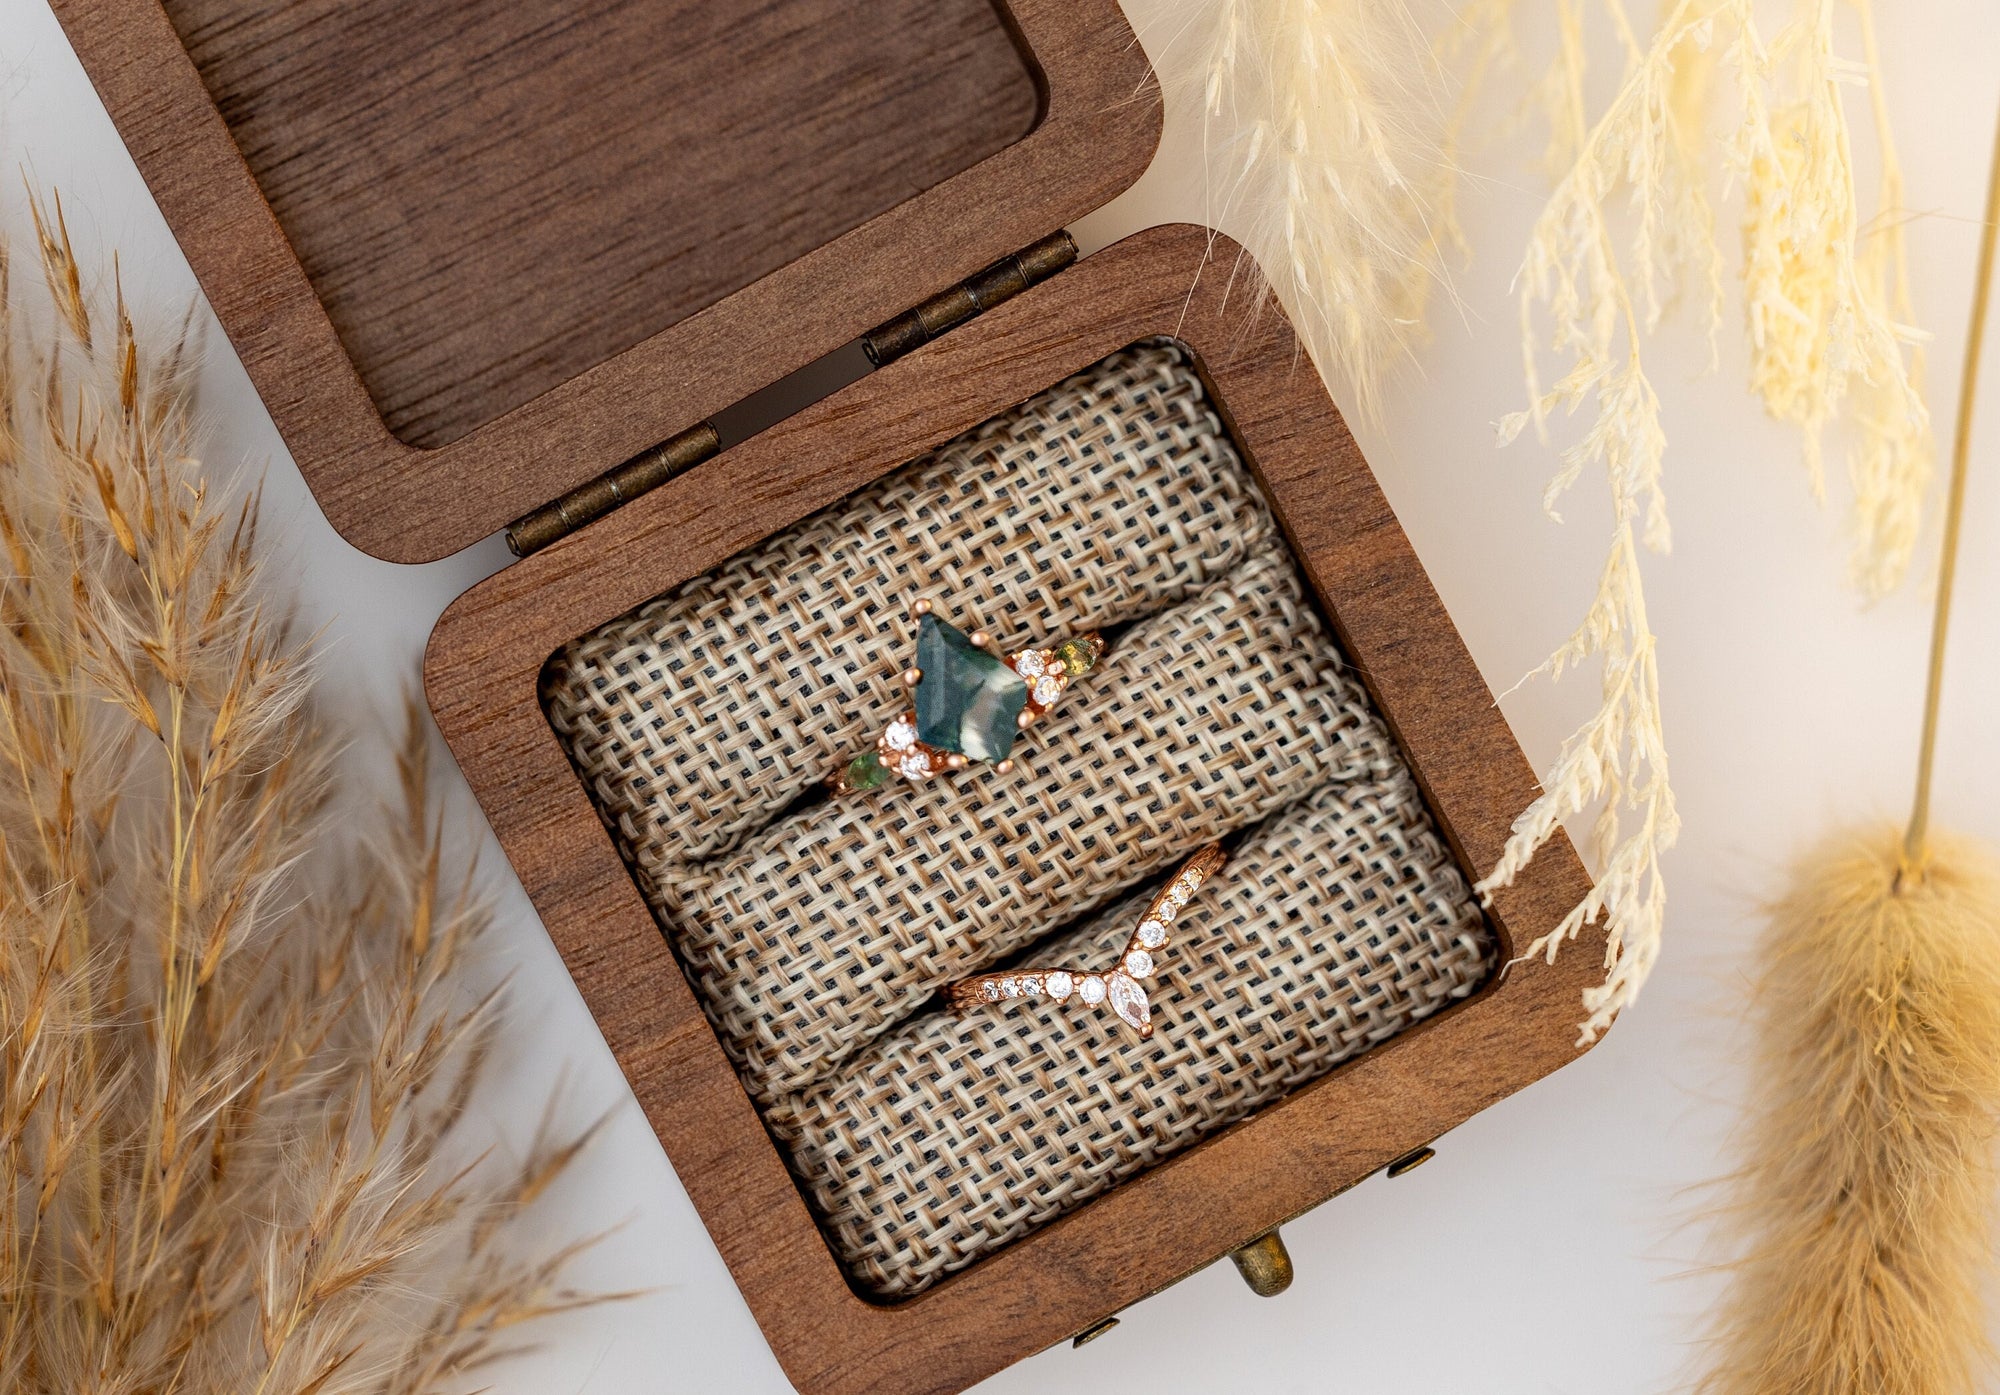 Walnut Wood Ring Box